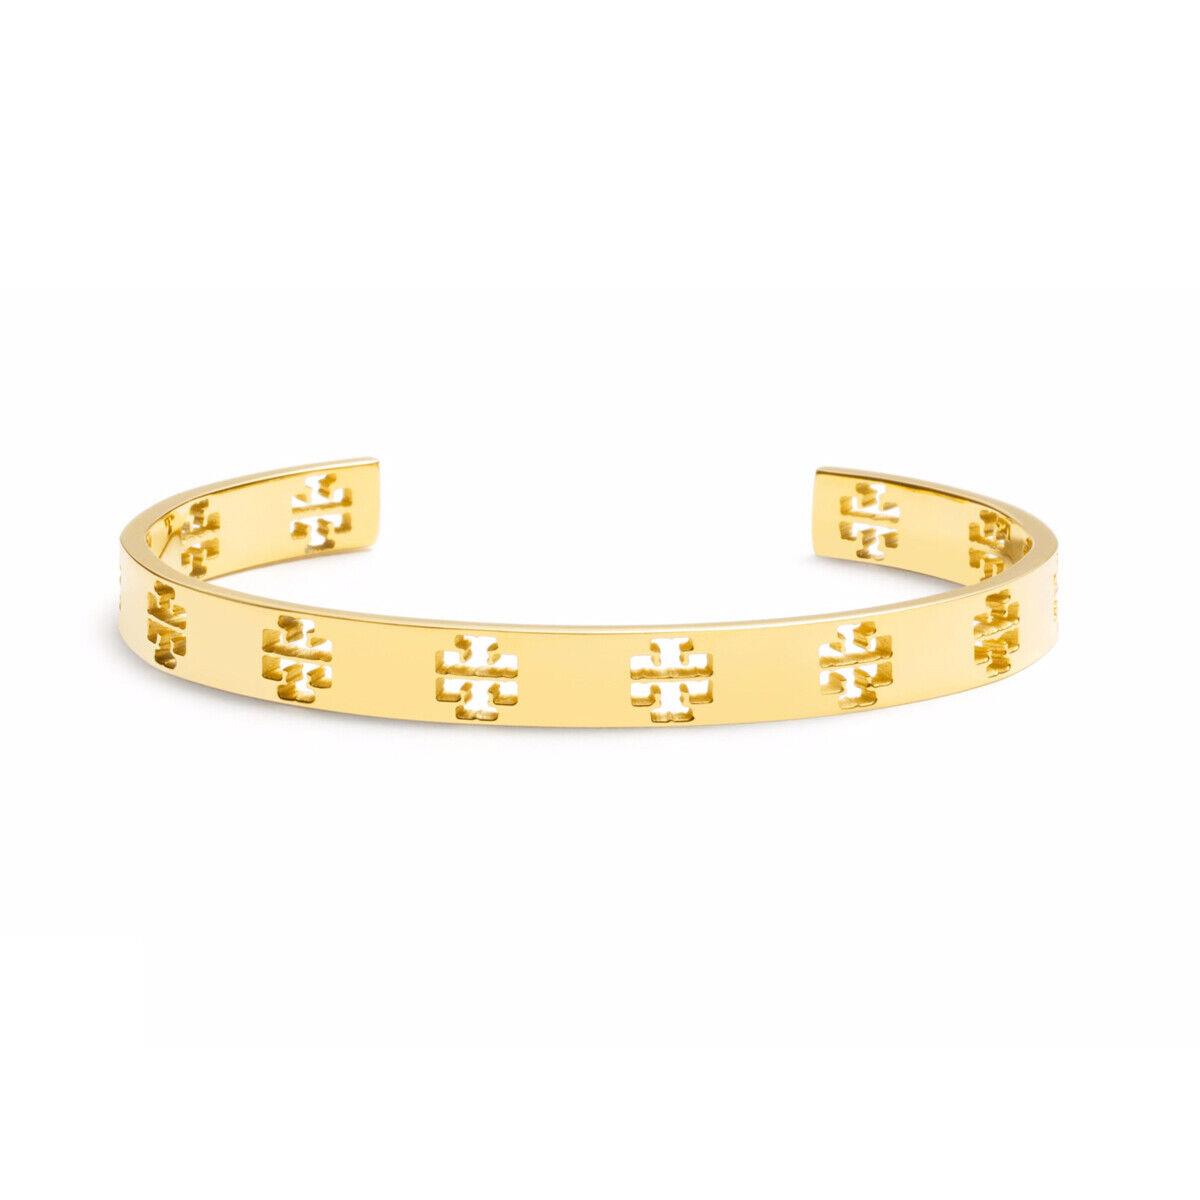 Tory Burch Gold T Pierced Cuff Bracelet - Tory Burch jewelry - 190041416226  | Fash Brands